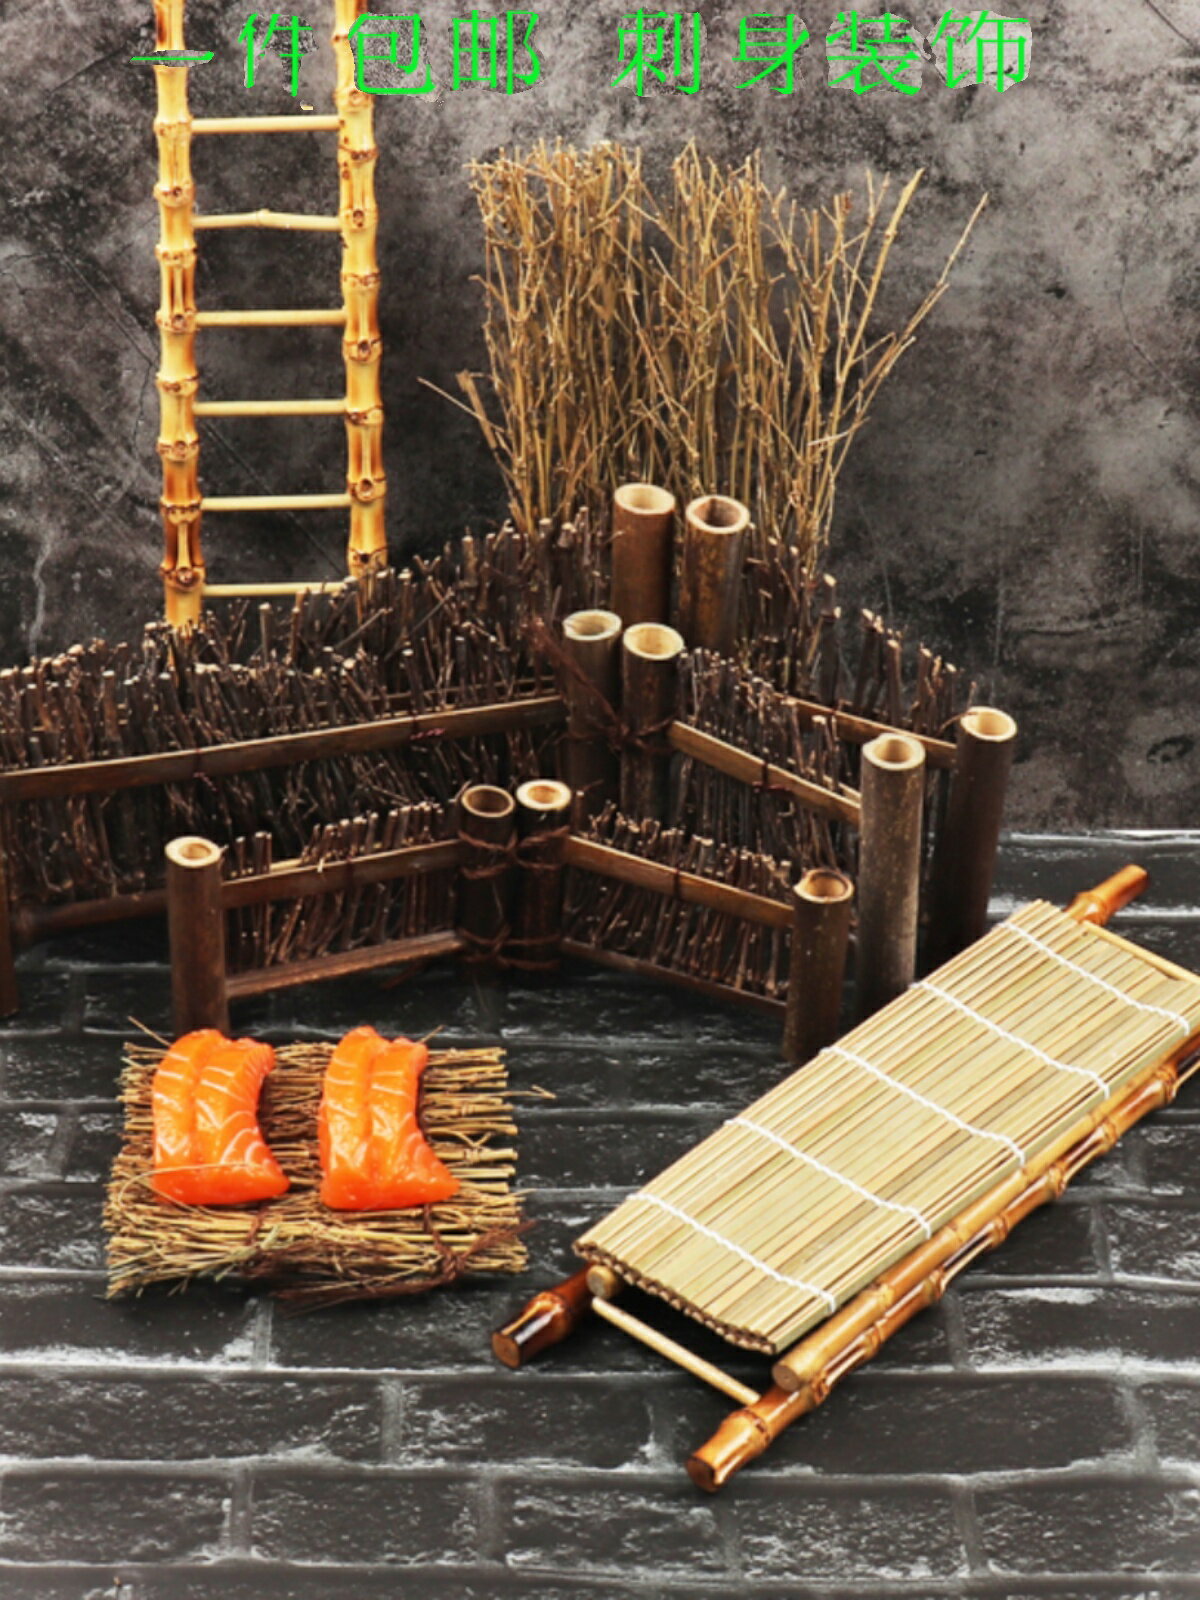 壽司擺盤竹籬笆竹絲編竹diy竹簾擺件日韓料理刺身飯團創意裝飾品